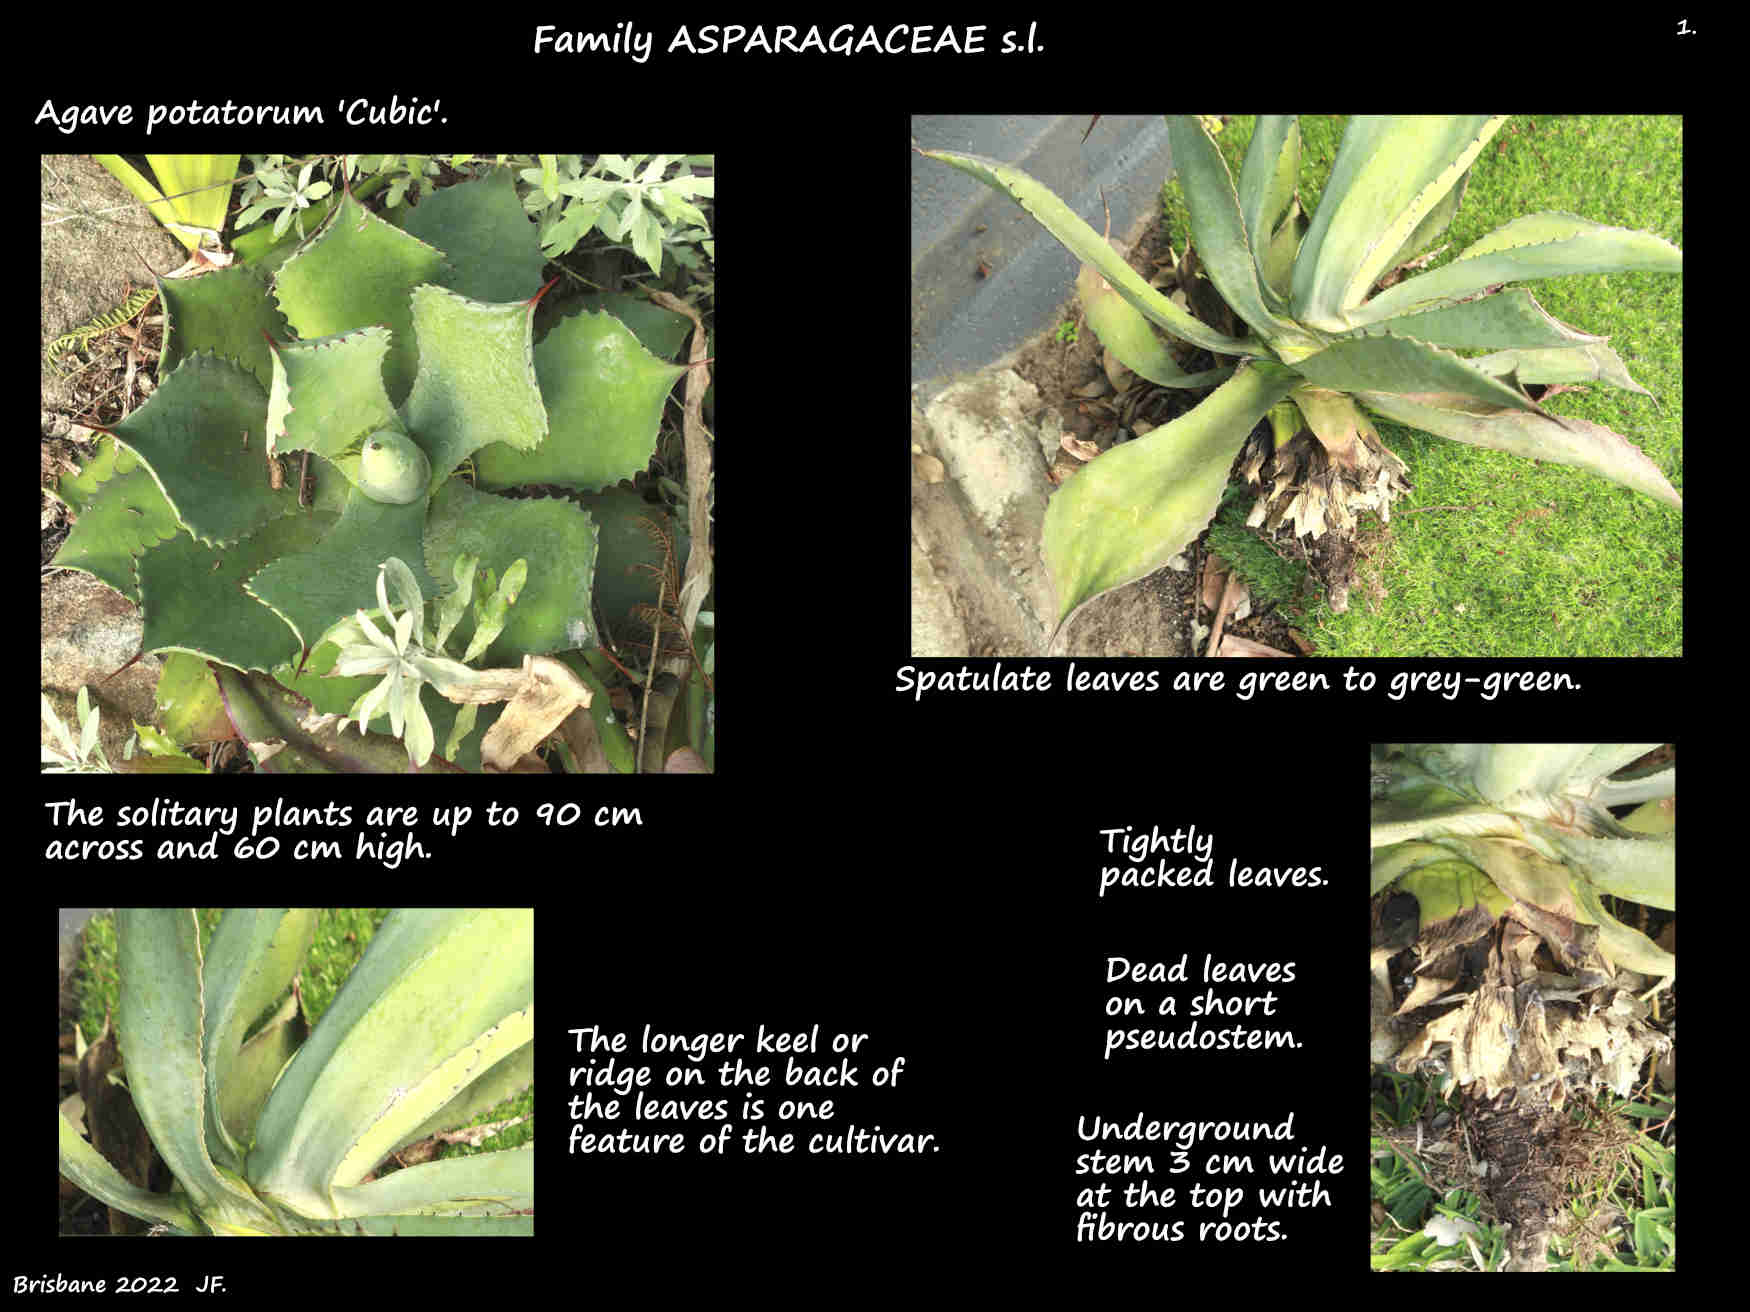 1 An Agave potatorum 'Cubic' plant